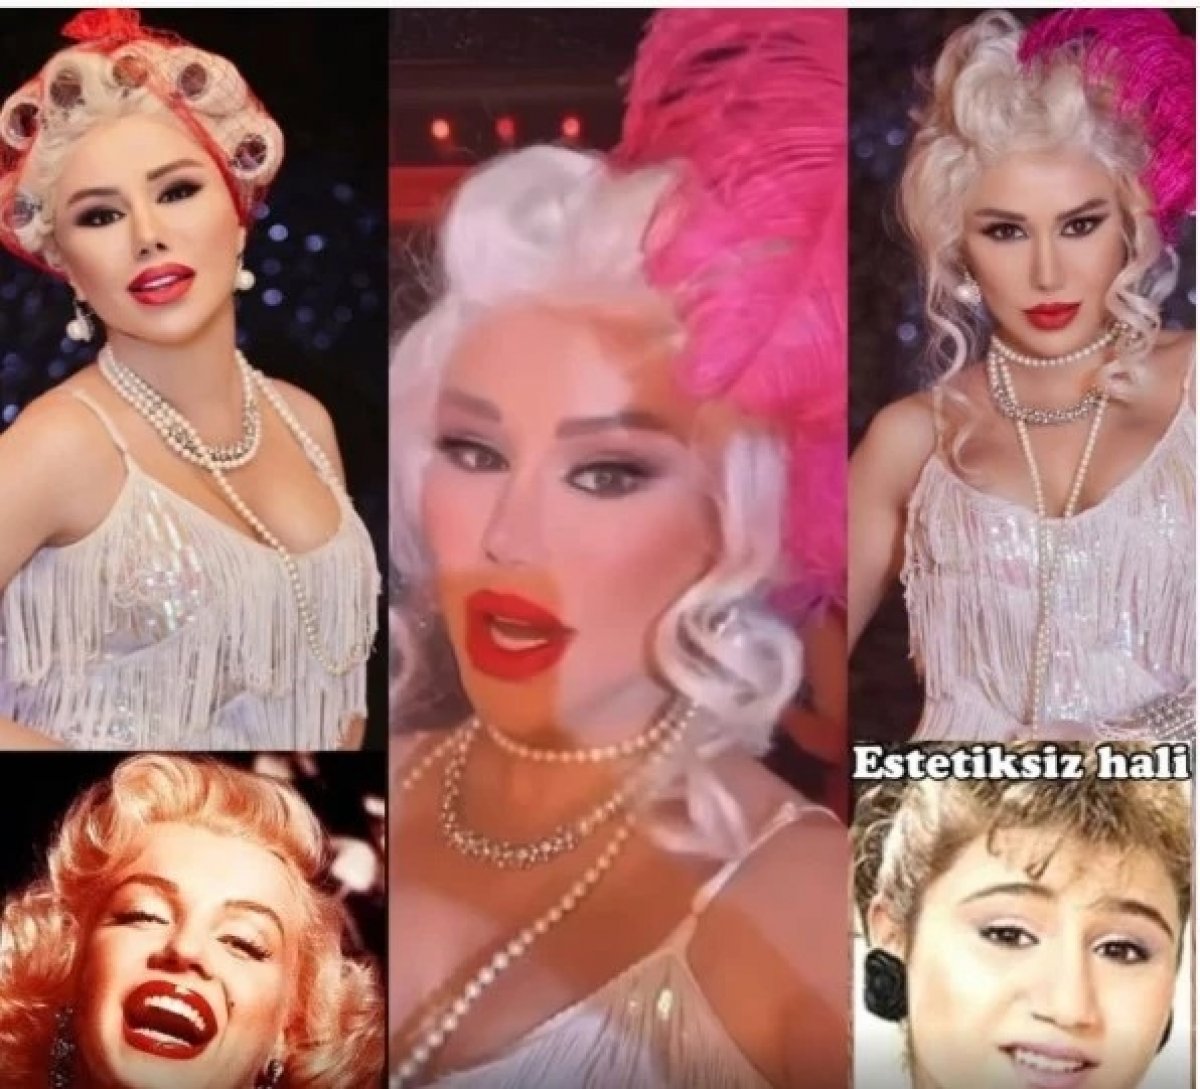  Ankaralı Marilyn Monroe  Türkücü Ceylan ın yeni imajını gören yoruma koştu... #5